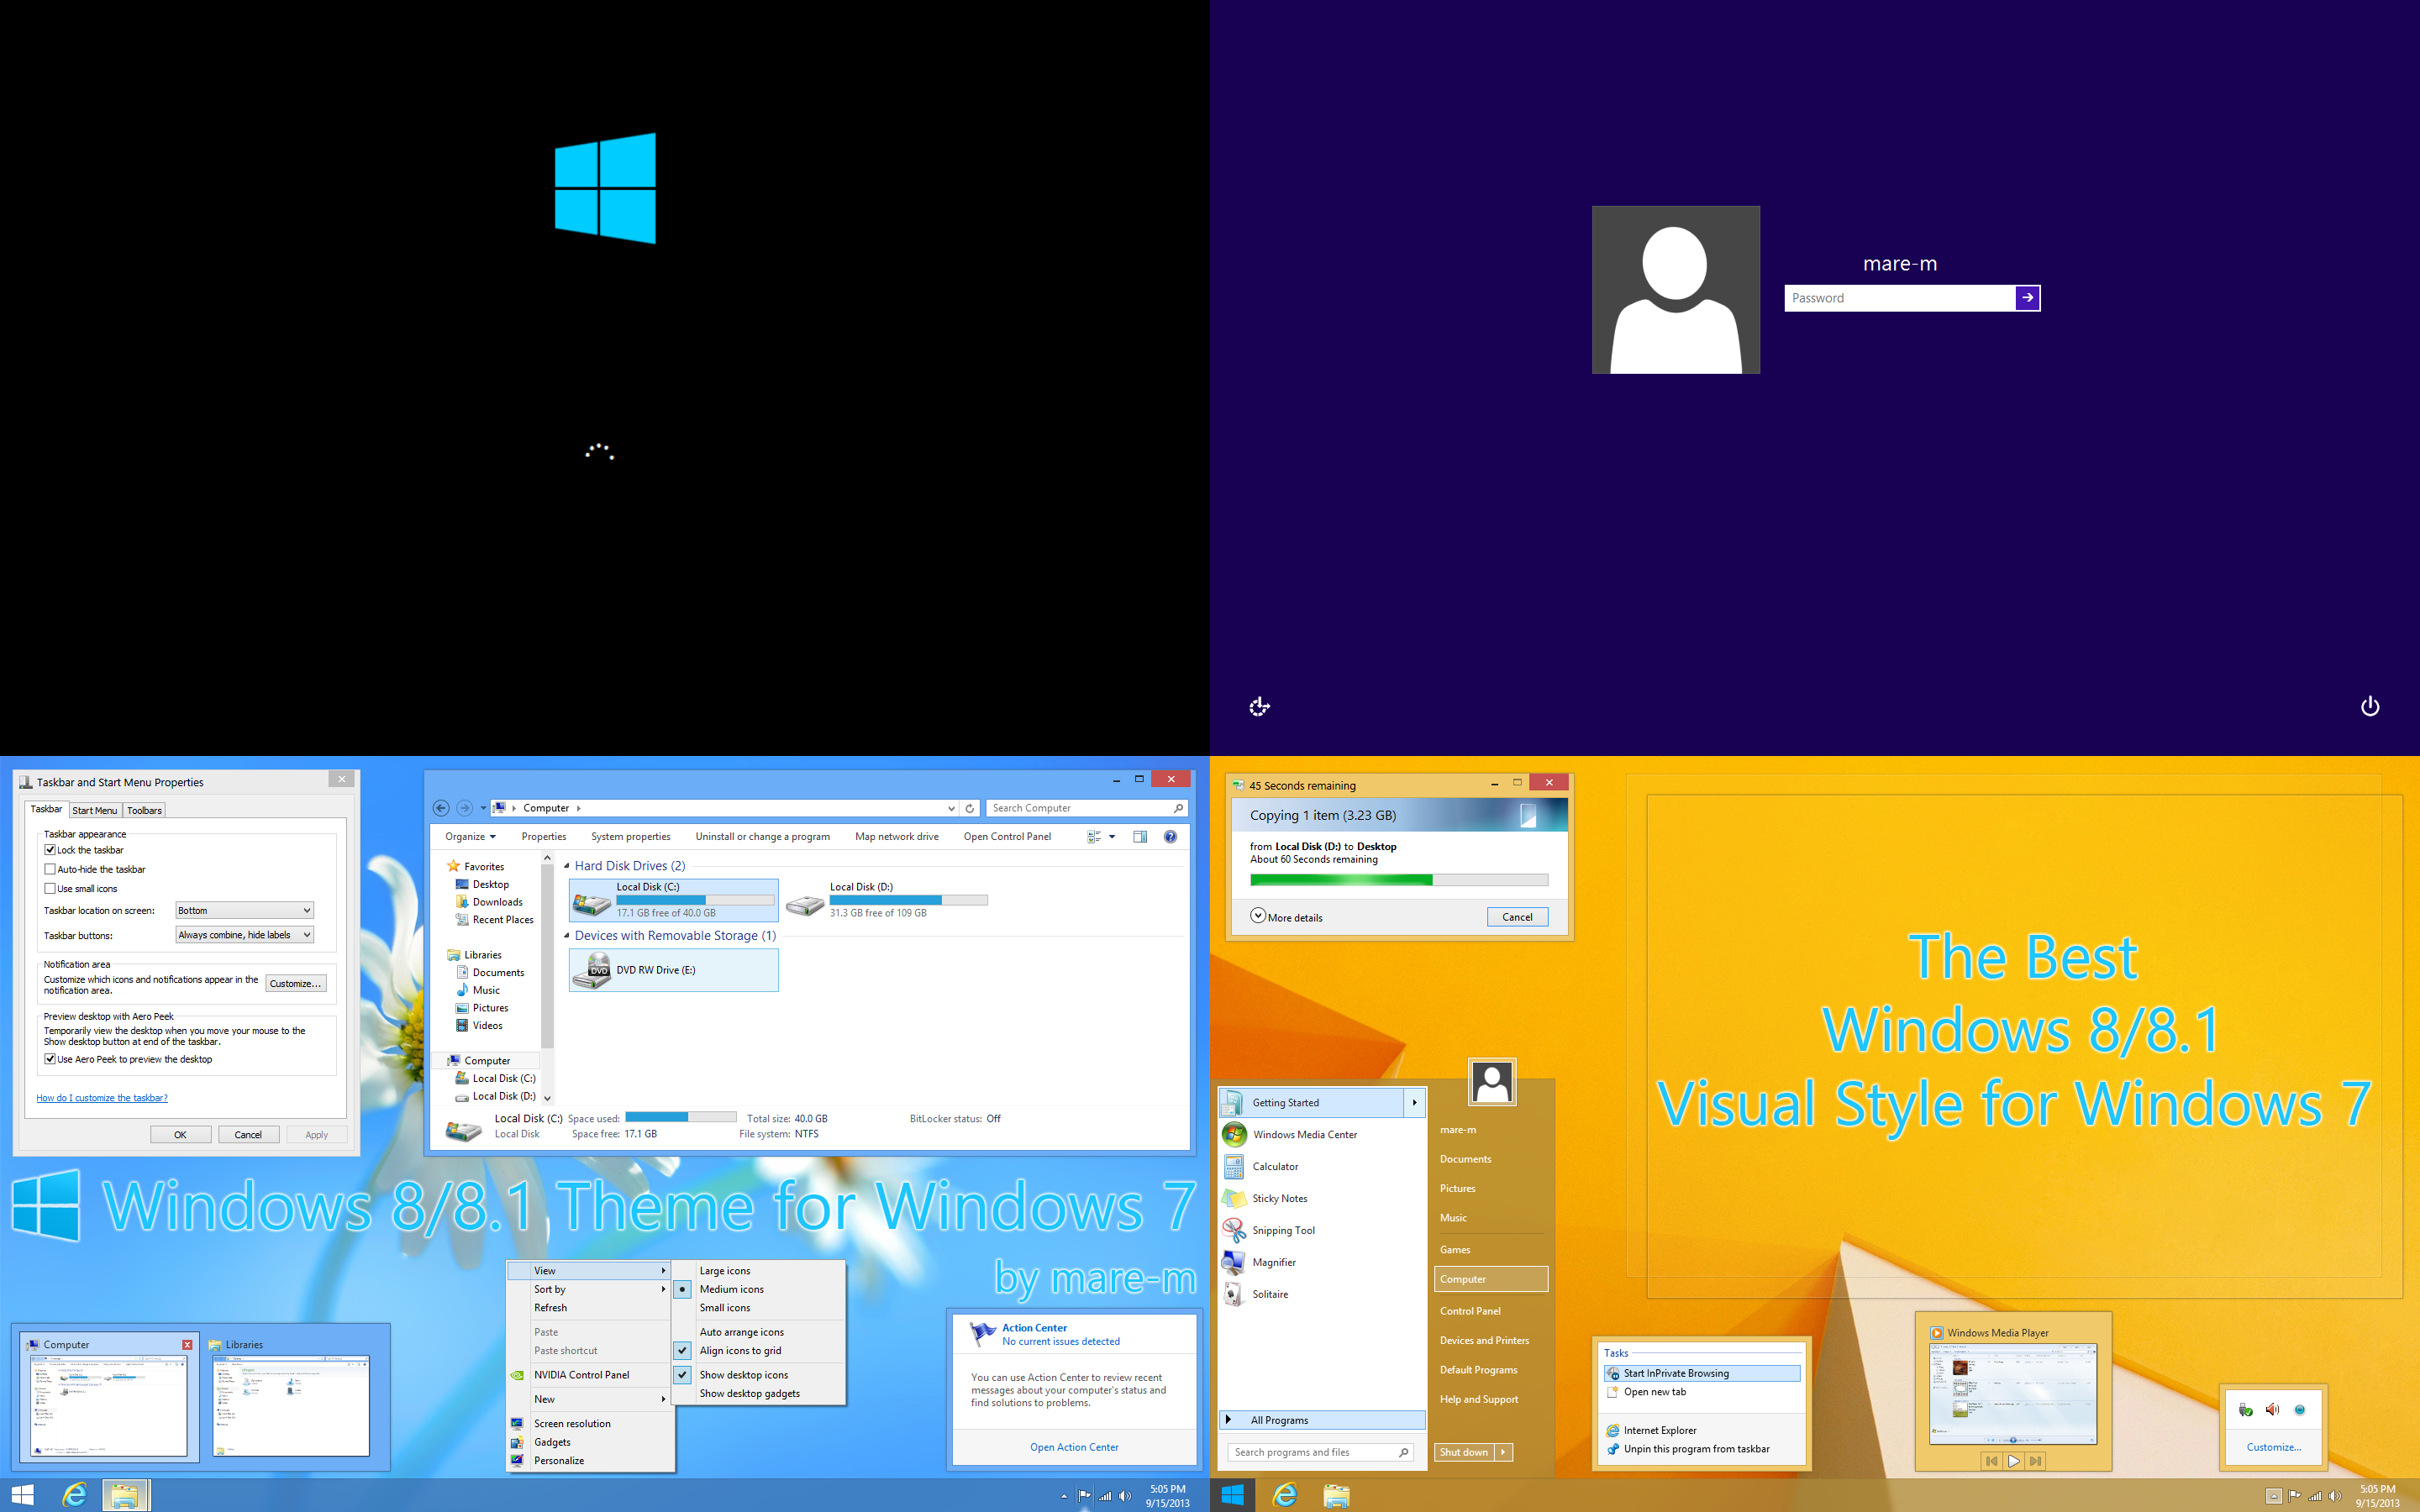 Hidden Windows 7 Wallpapers  RalphvandenBergcom Ramblings